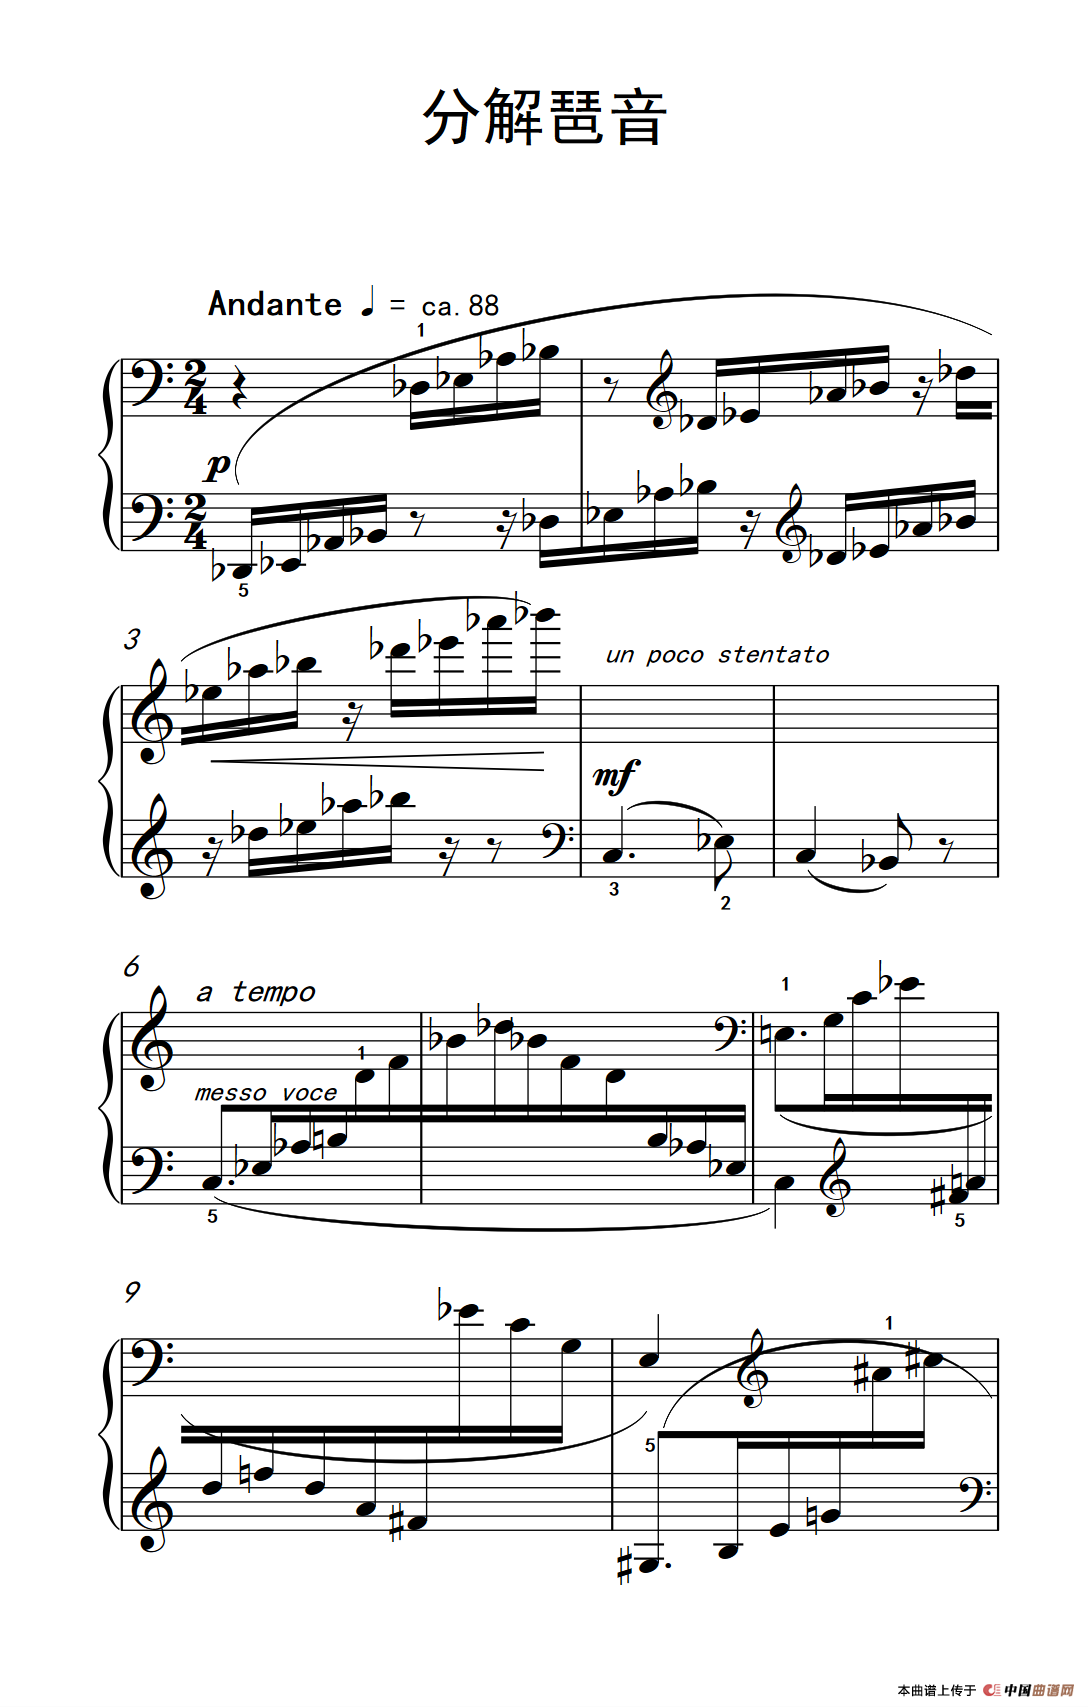 《分解琶音》钢琴曲谱图分享